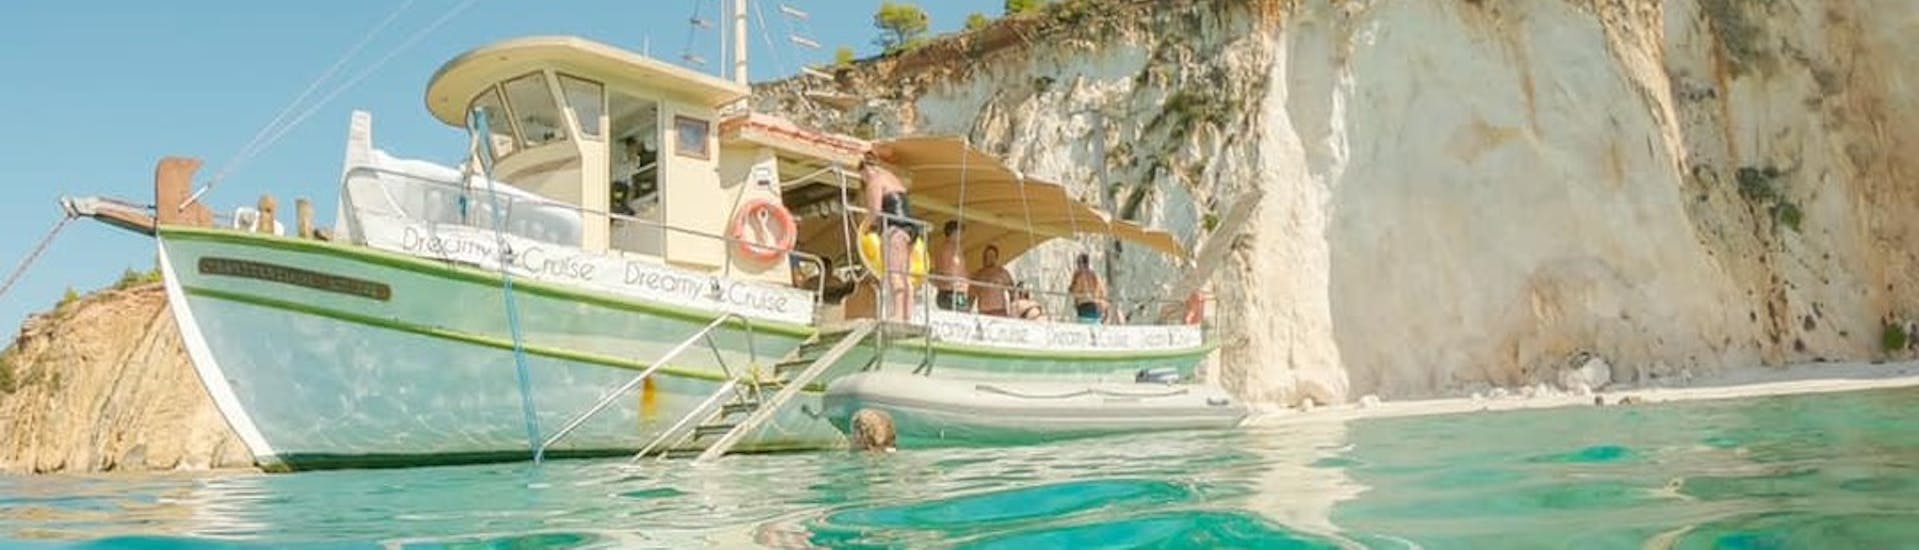 Dreamy Cruises bei einem Schwimmstopp auf ihrer privaten Bootstour aus Argostoli entlang der Küste von Kefalonia mit Mittagessen.